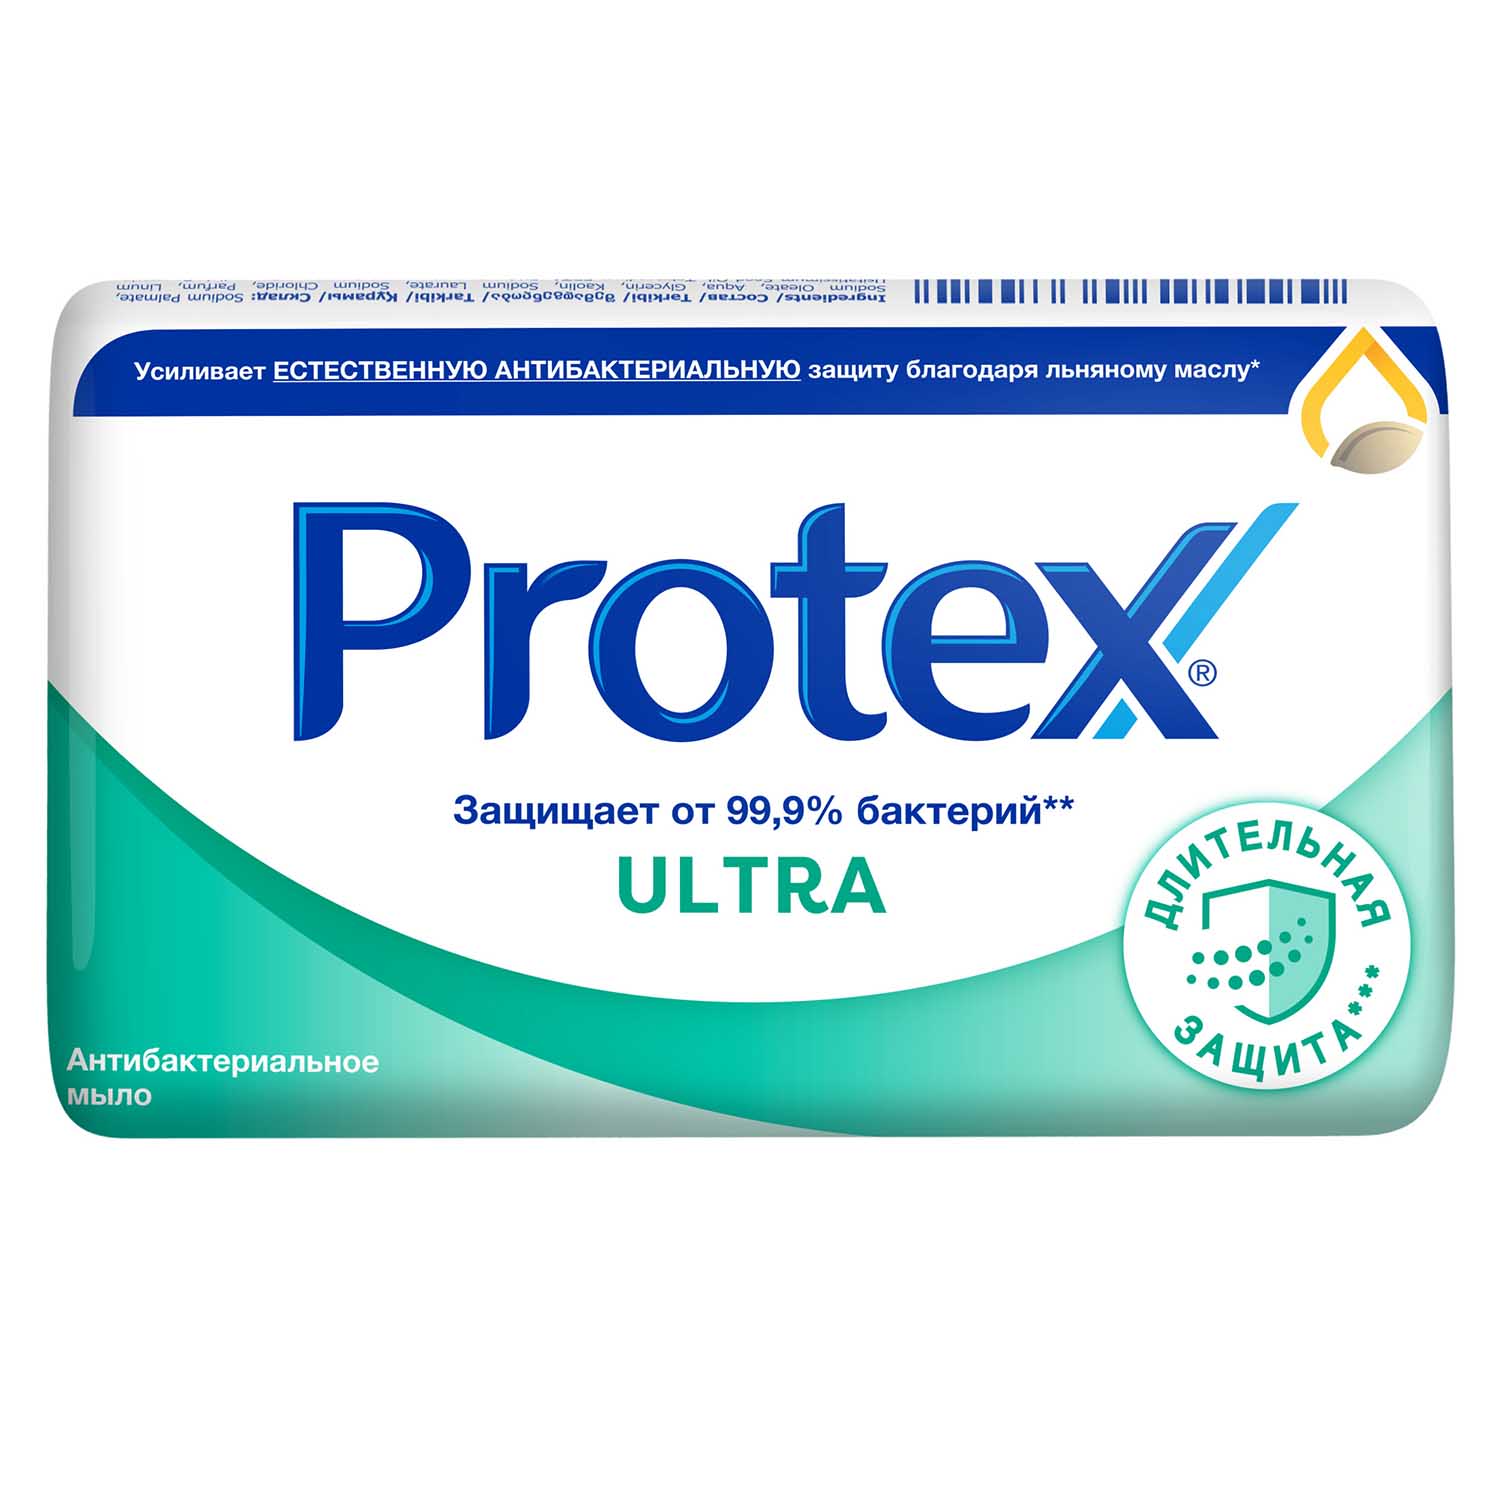 Мыло туалетное Protex Ultra Антибактериальное с льняным маслом, 90 гр мыло protex ultra антибактериальное 90 г